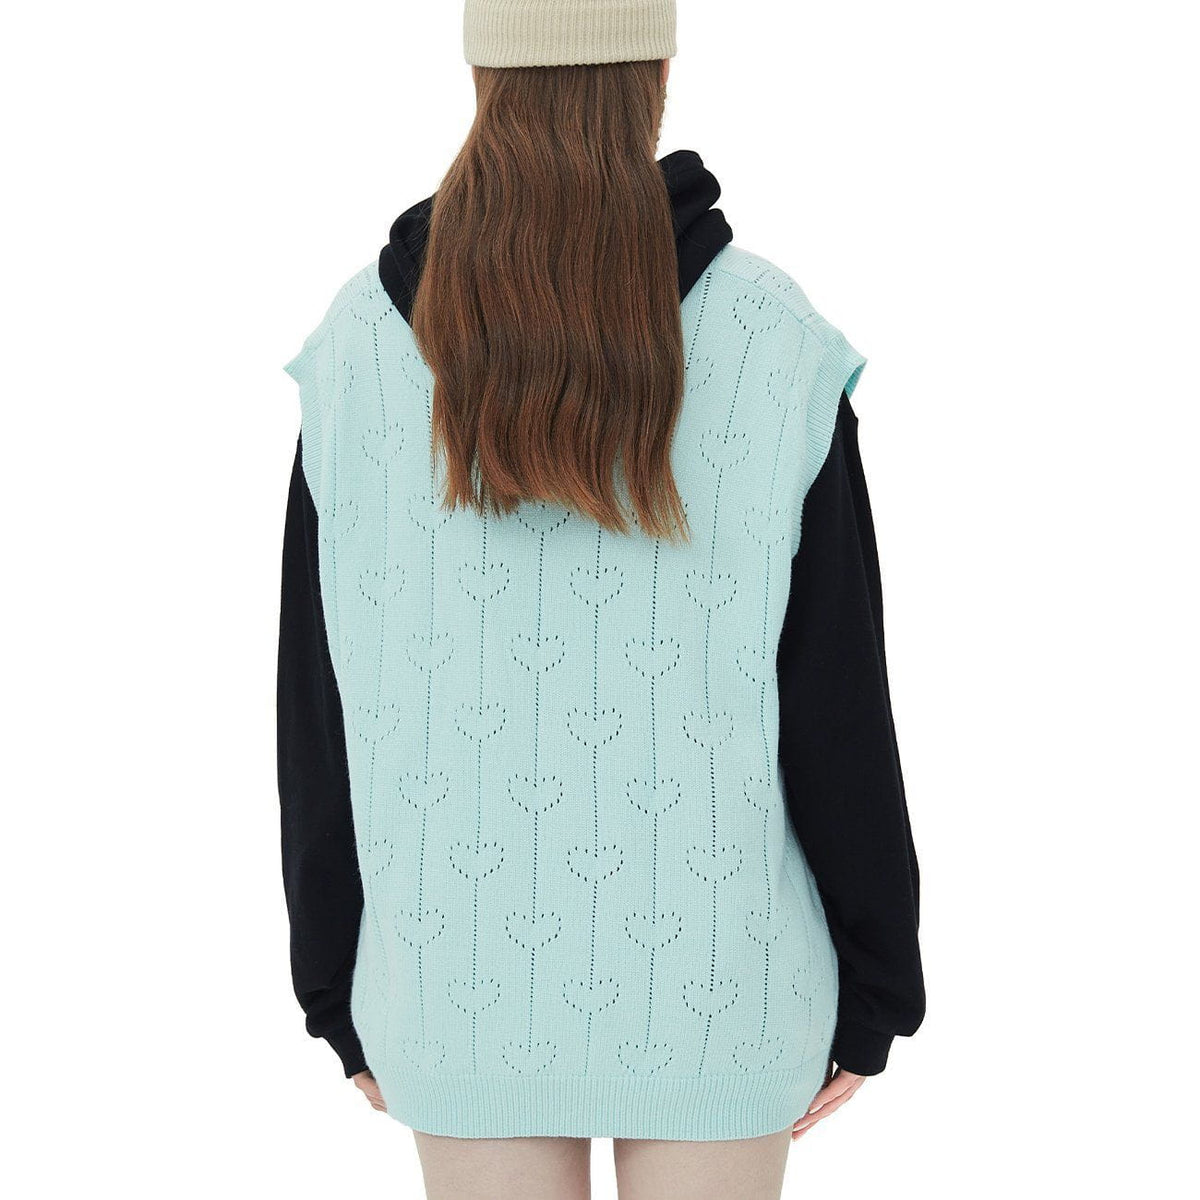 Eprezzy® - Hollow Love Sweater Vest Streetwear Fashion - eprezzy.com